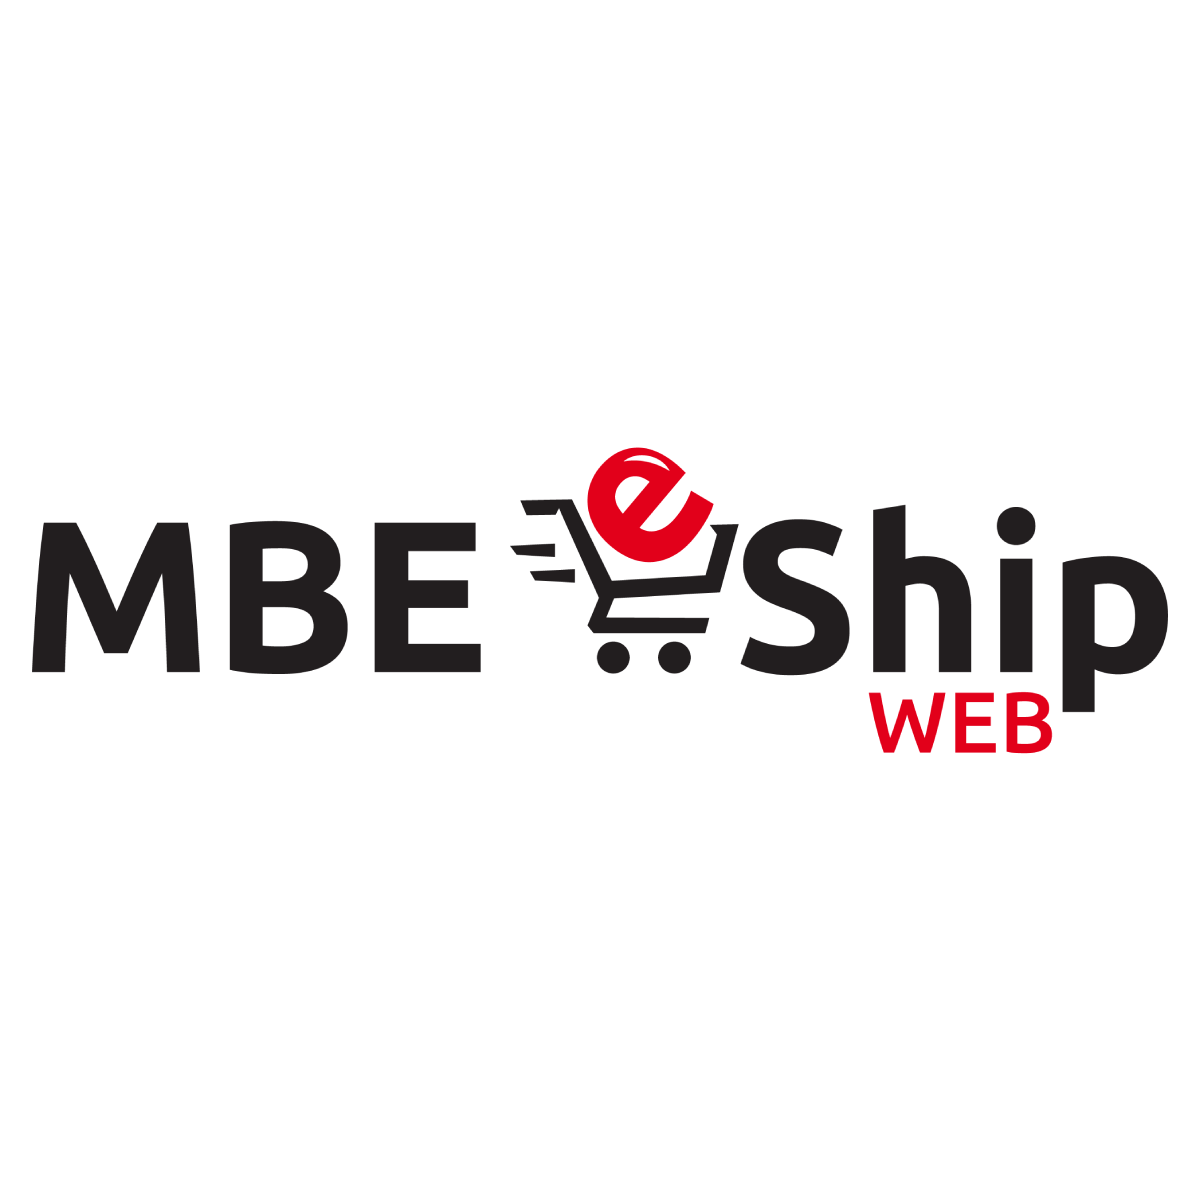 MBE eShip WEB